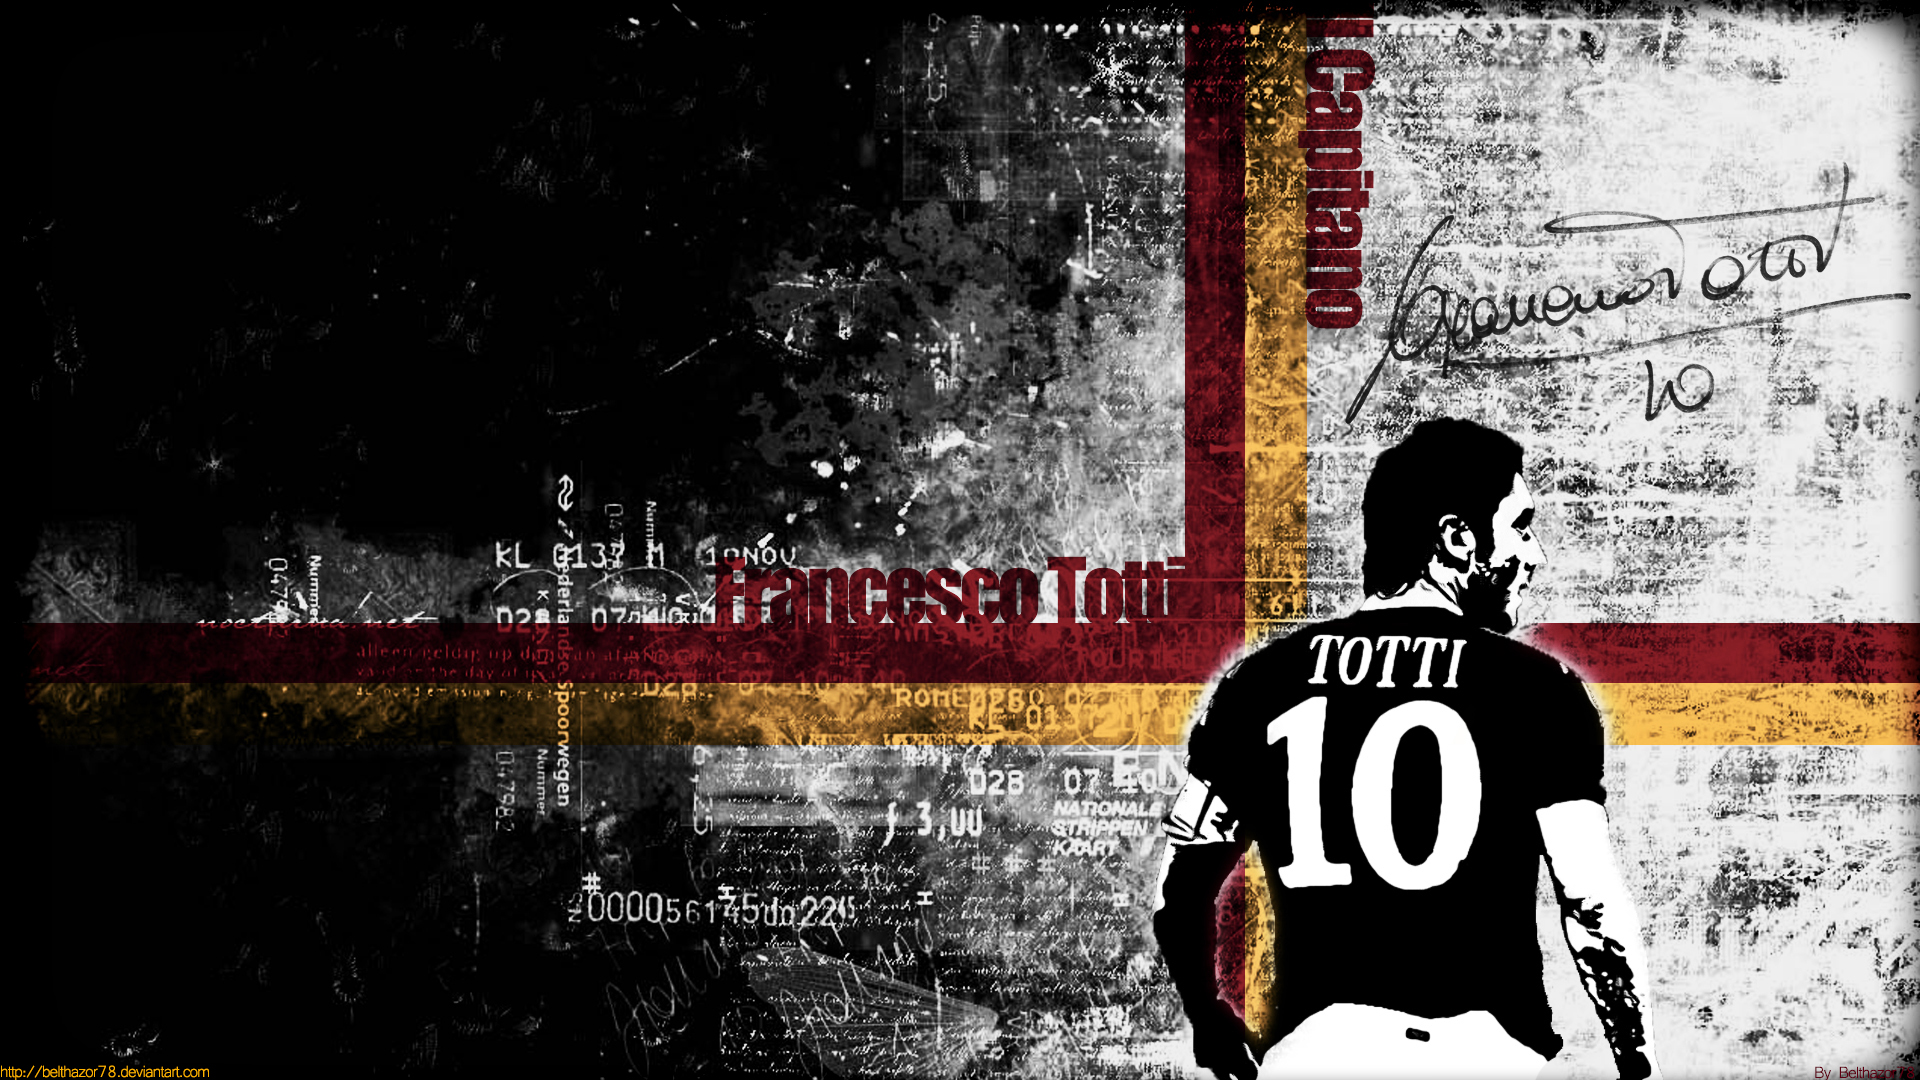 Descarga gratuita de fondo de pantalla para móvil de Fútbol, Deporte, Francesco Totti, Como Roma.